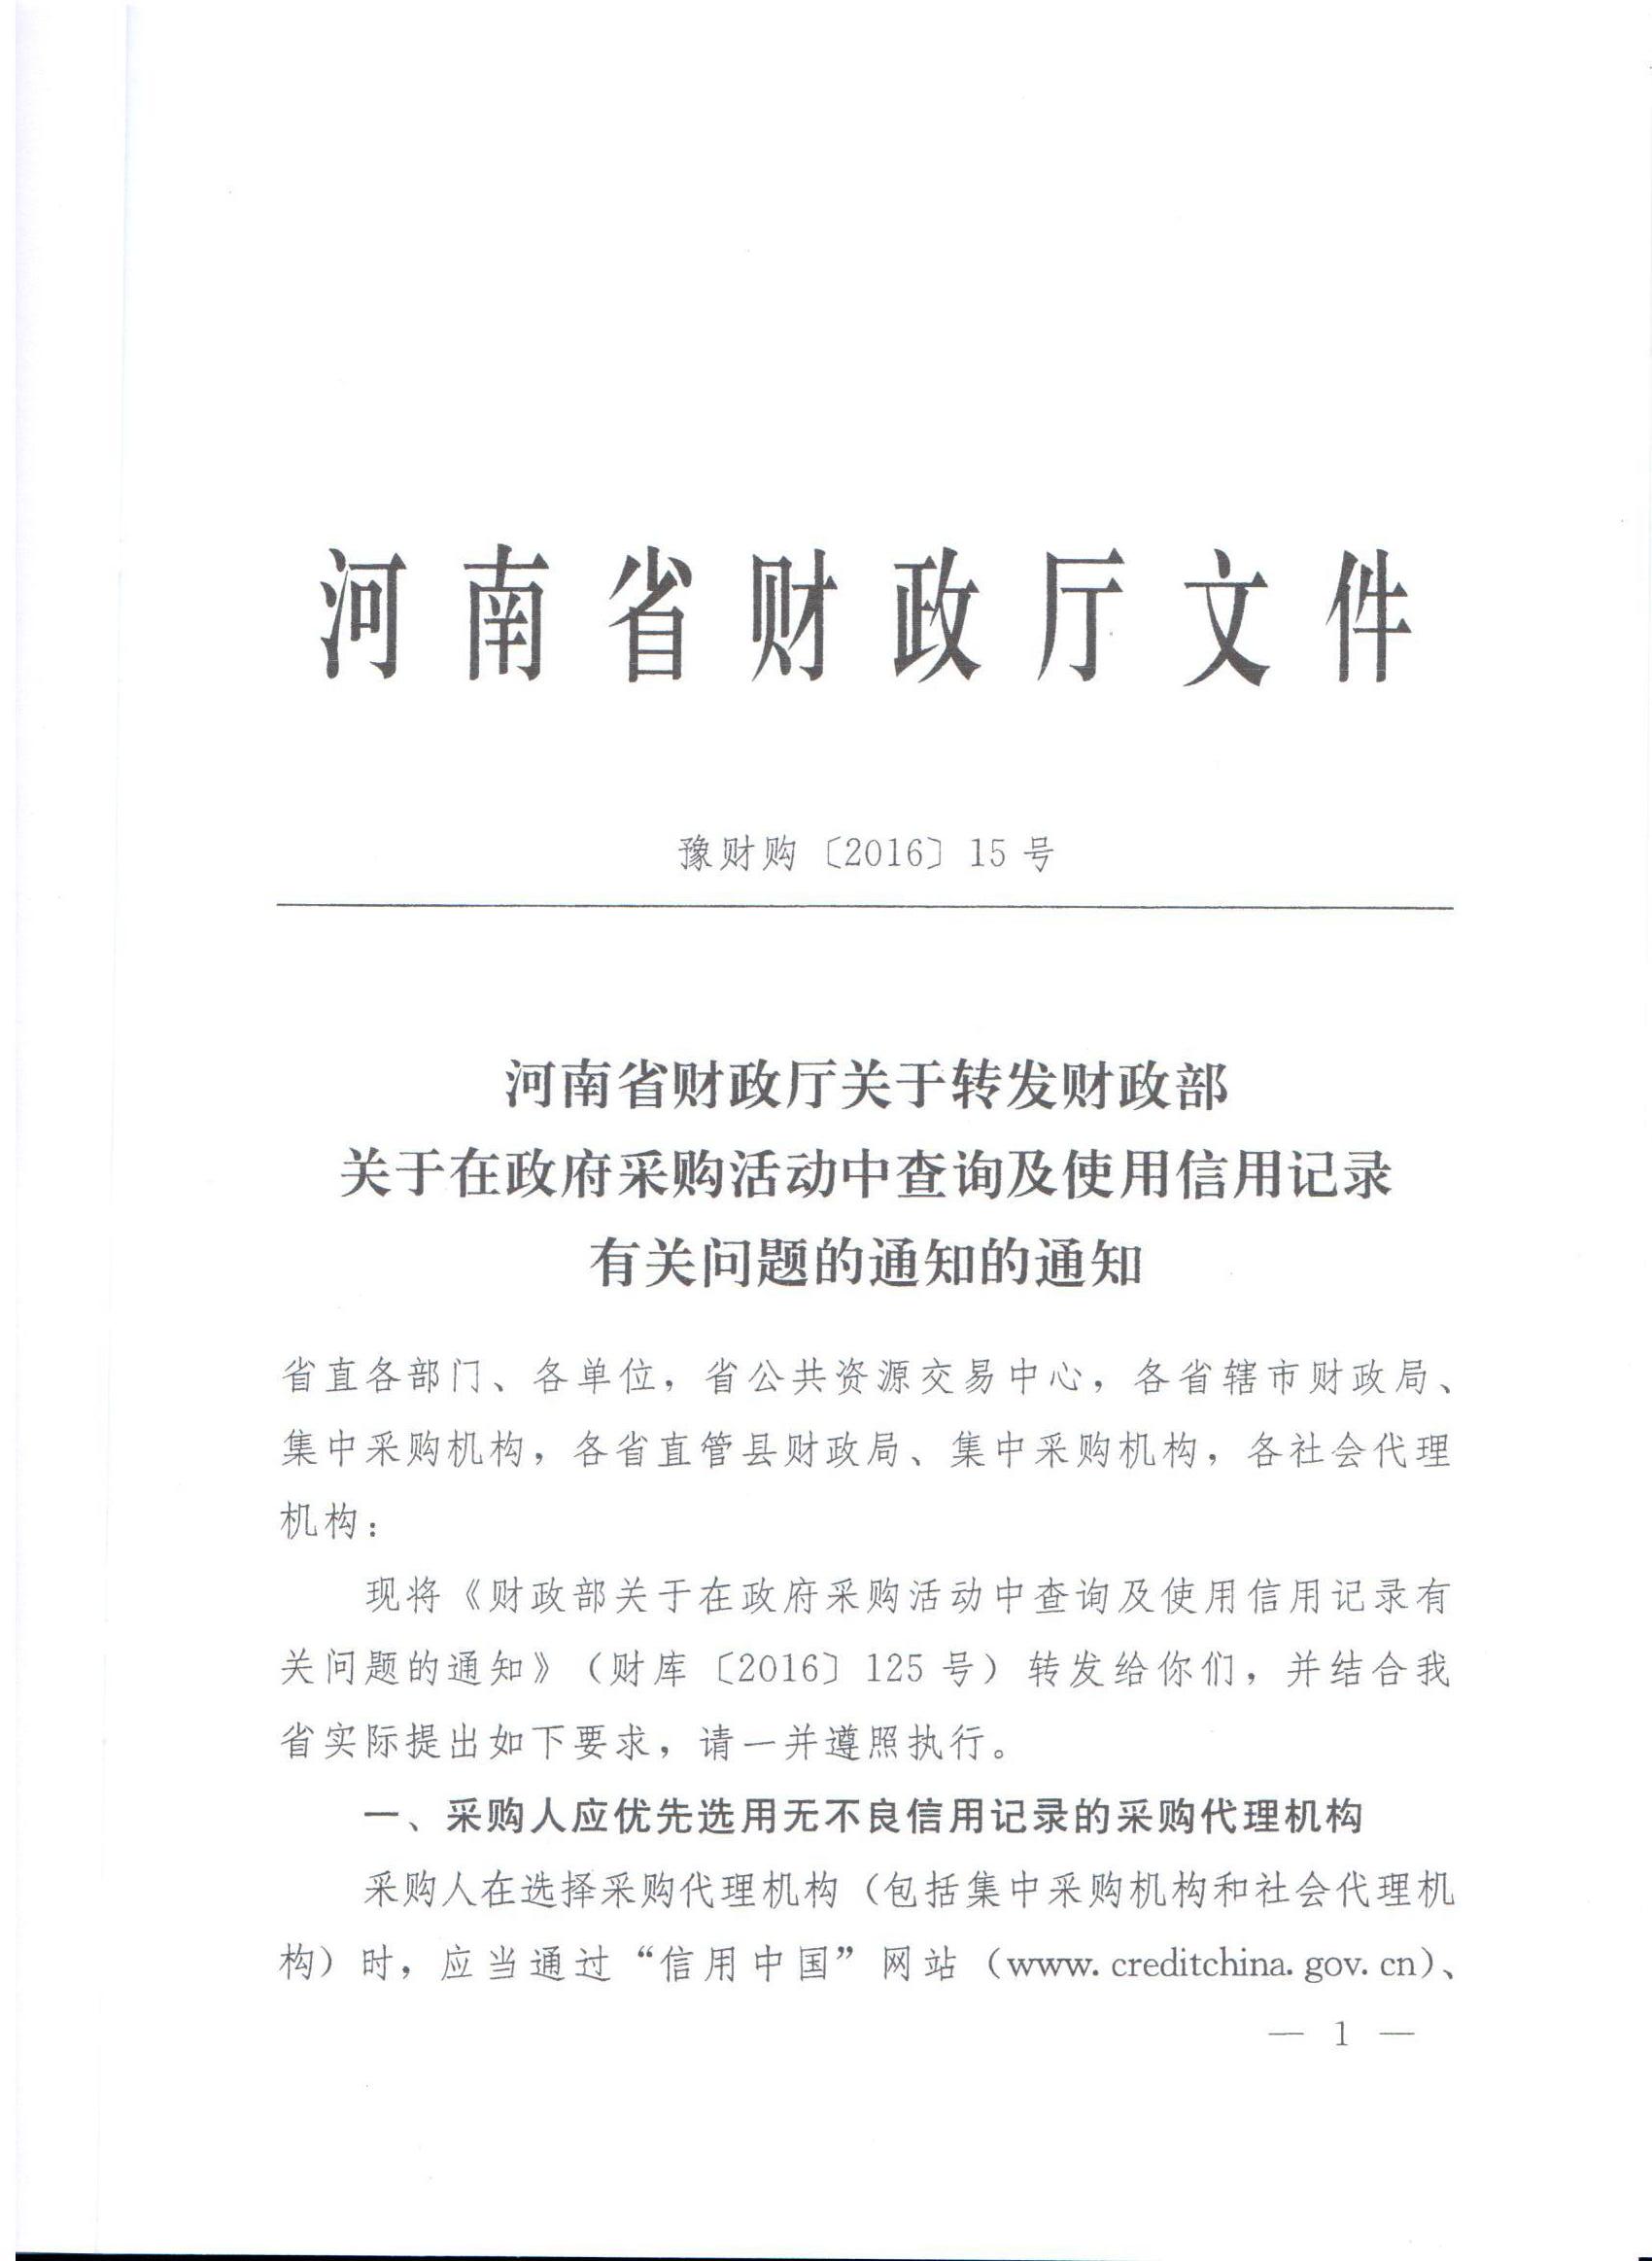 河南省财政厅转发财政部关于在政府采购活动中查询及使用信用记录有关问题的通知的通知(图1)